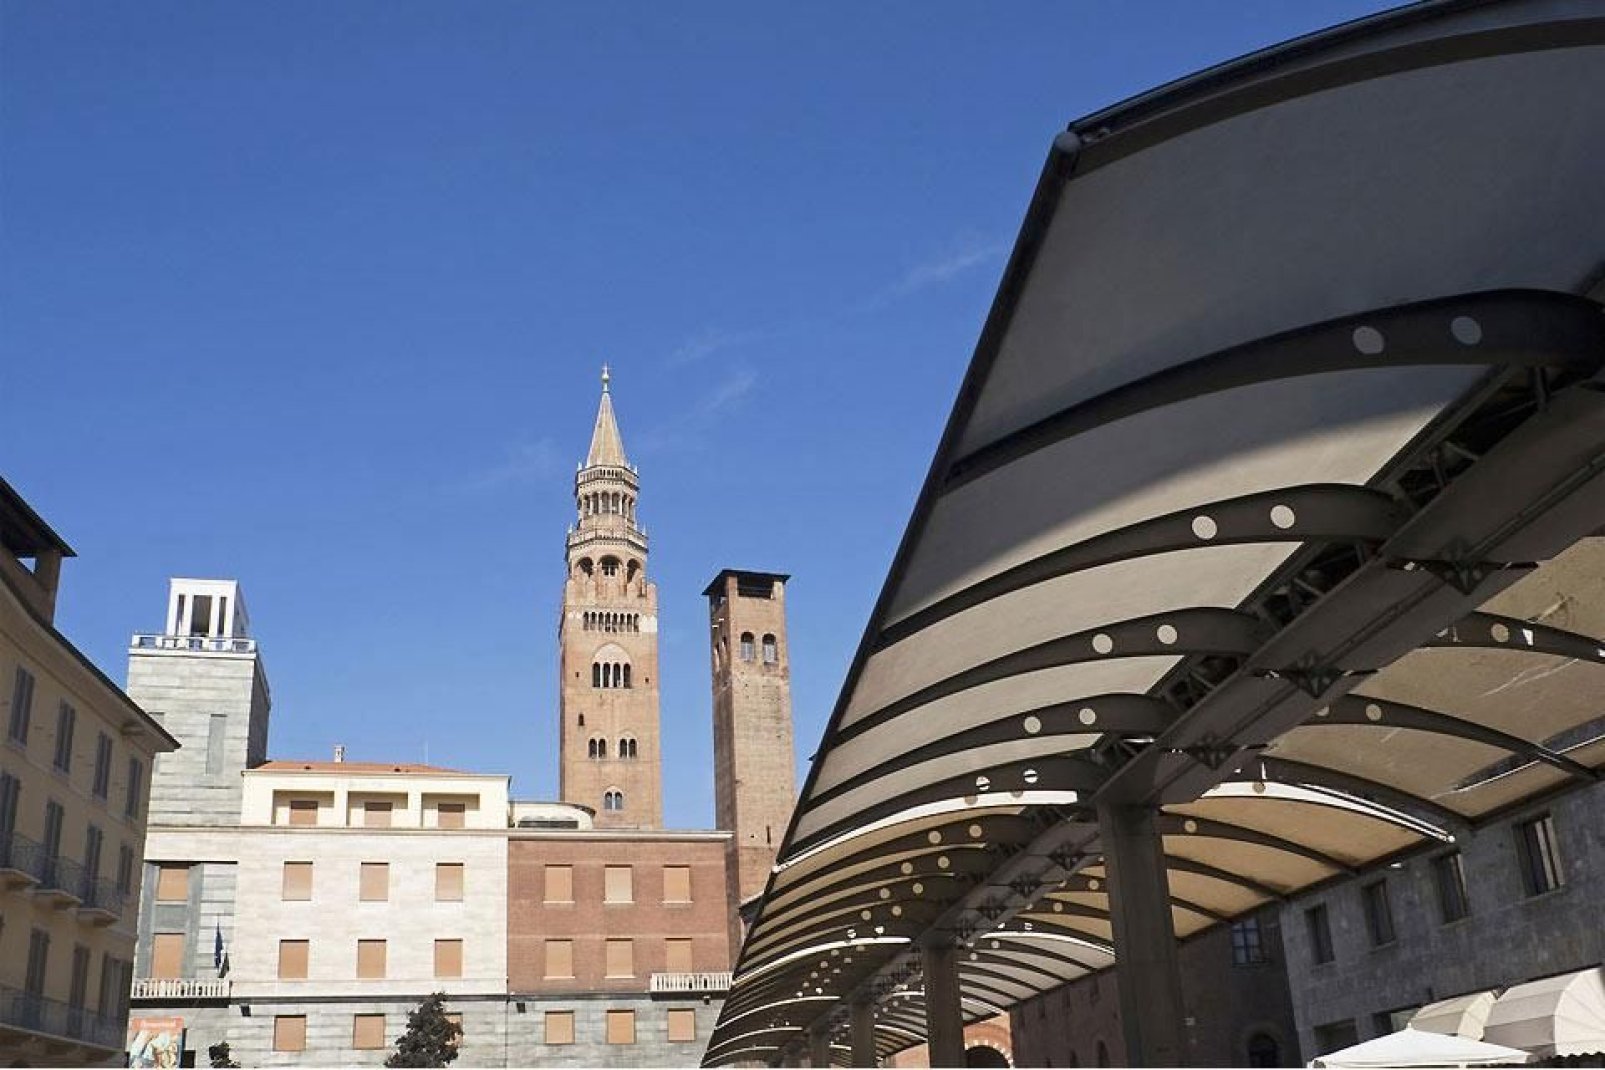 Cremona se sitúa en el corazón de la llanura del Po, en las orillas del río del mismo nombre; su fundación se remonta a la época romana.